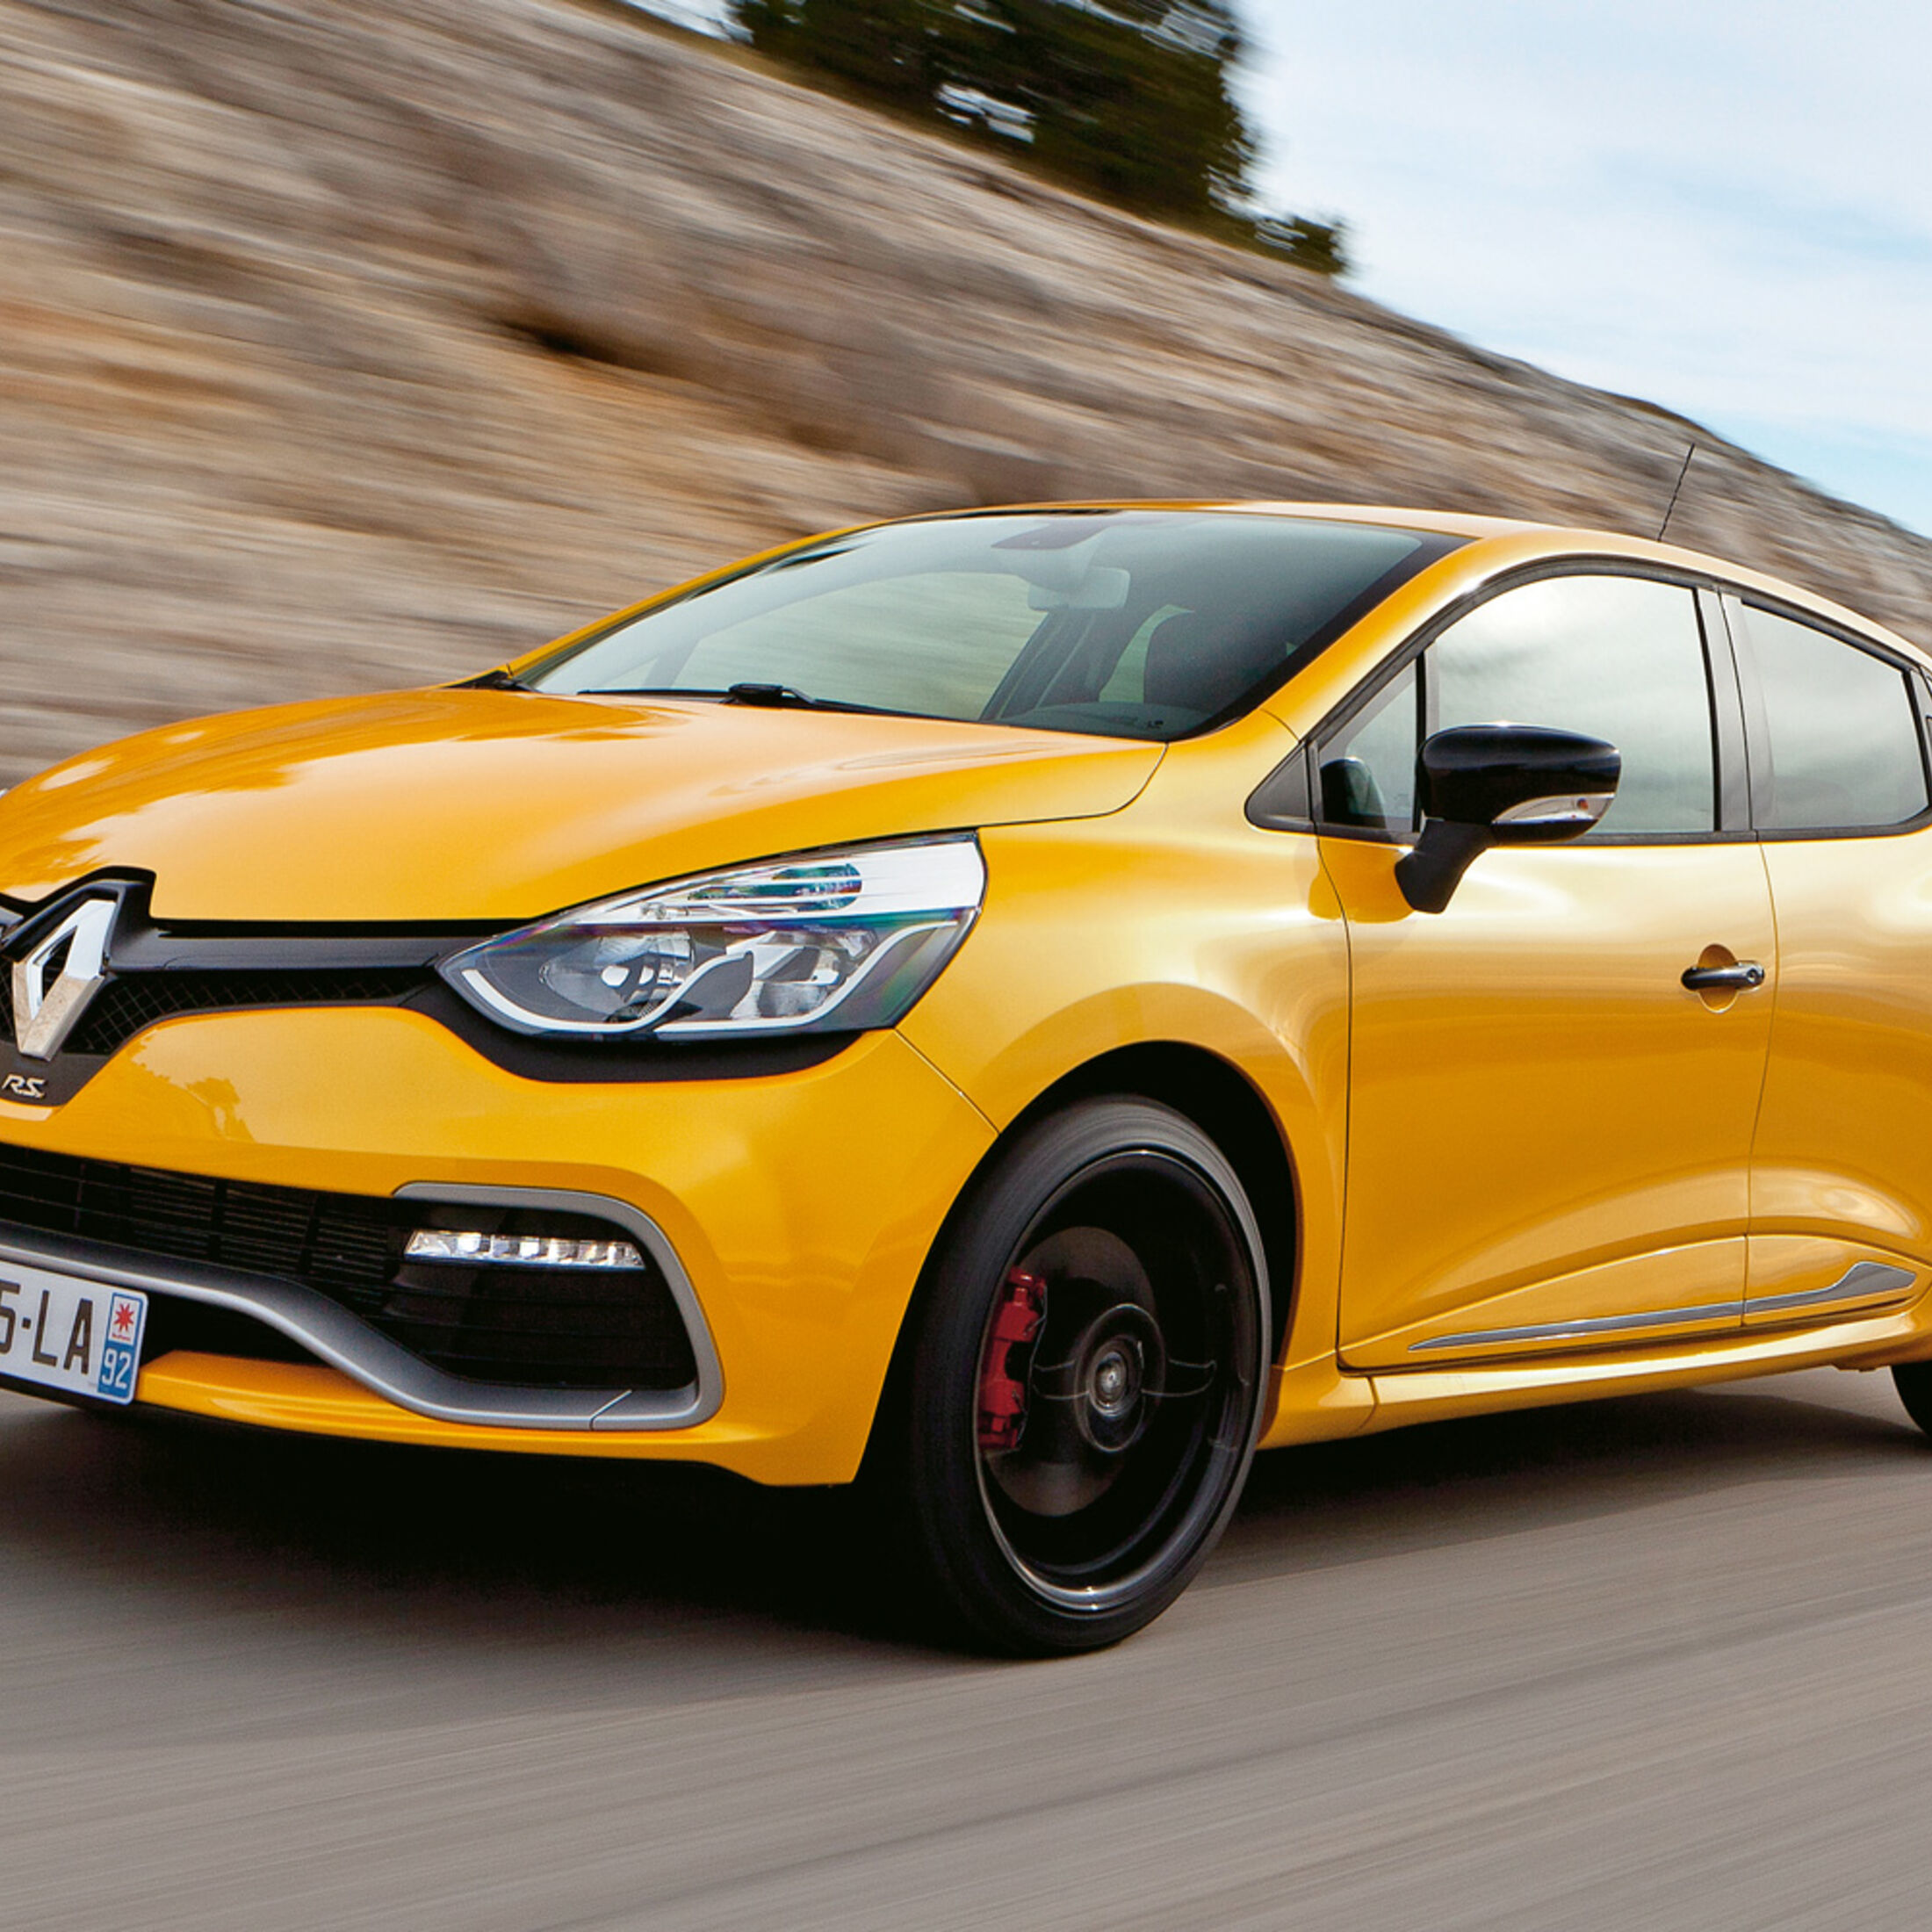 Tuning Teile für Renault Clio günstig bestellen